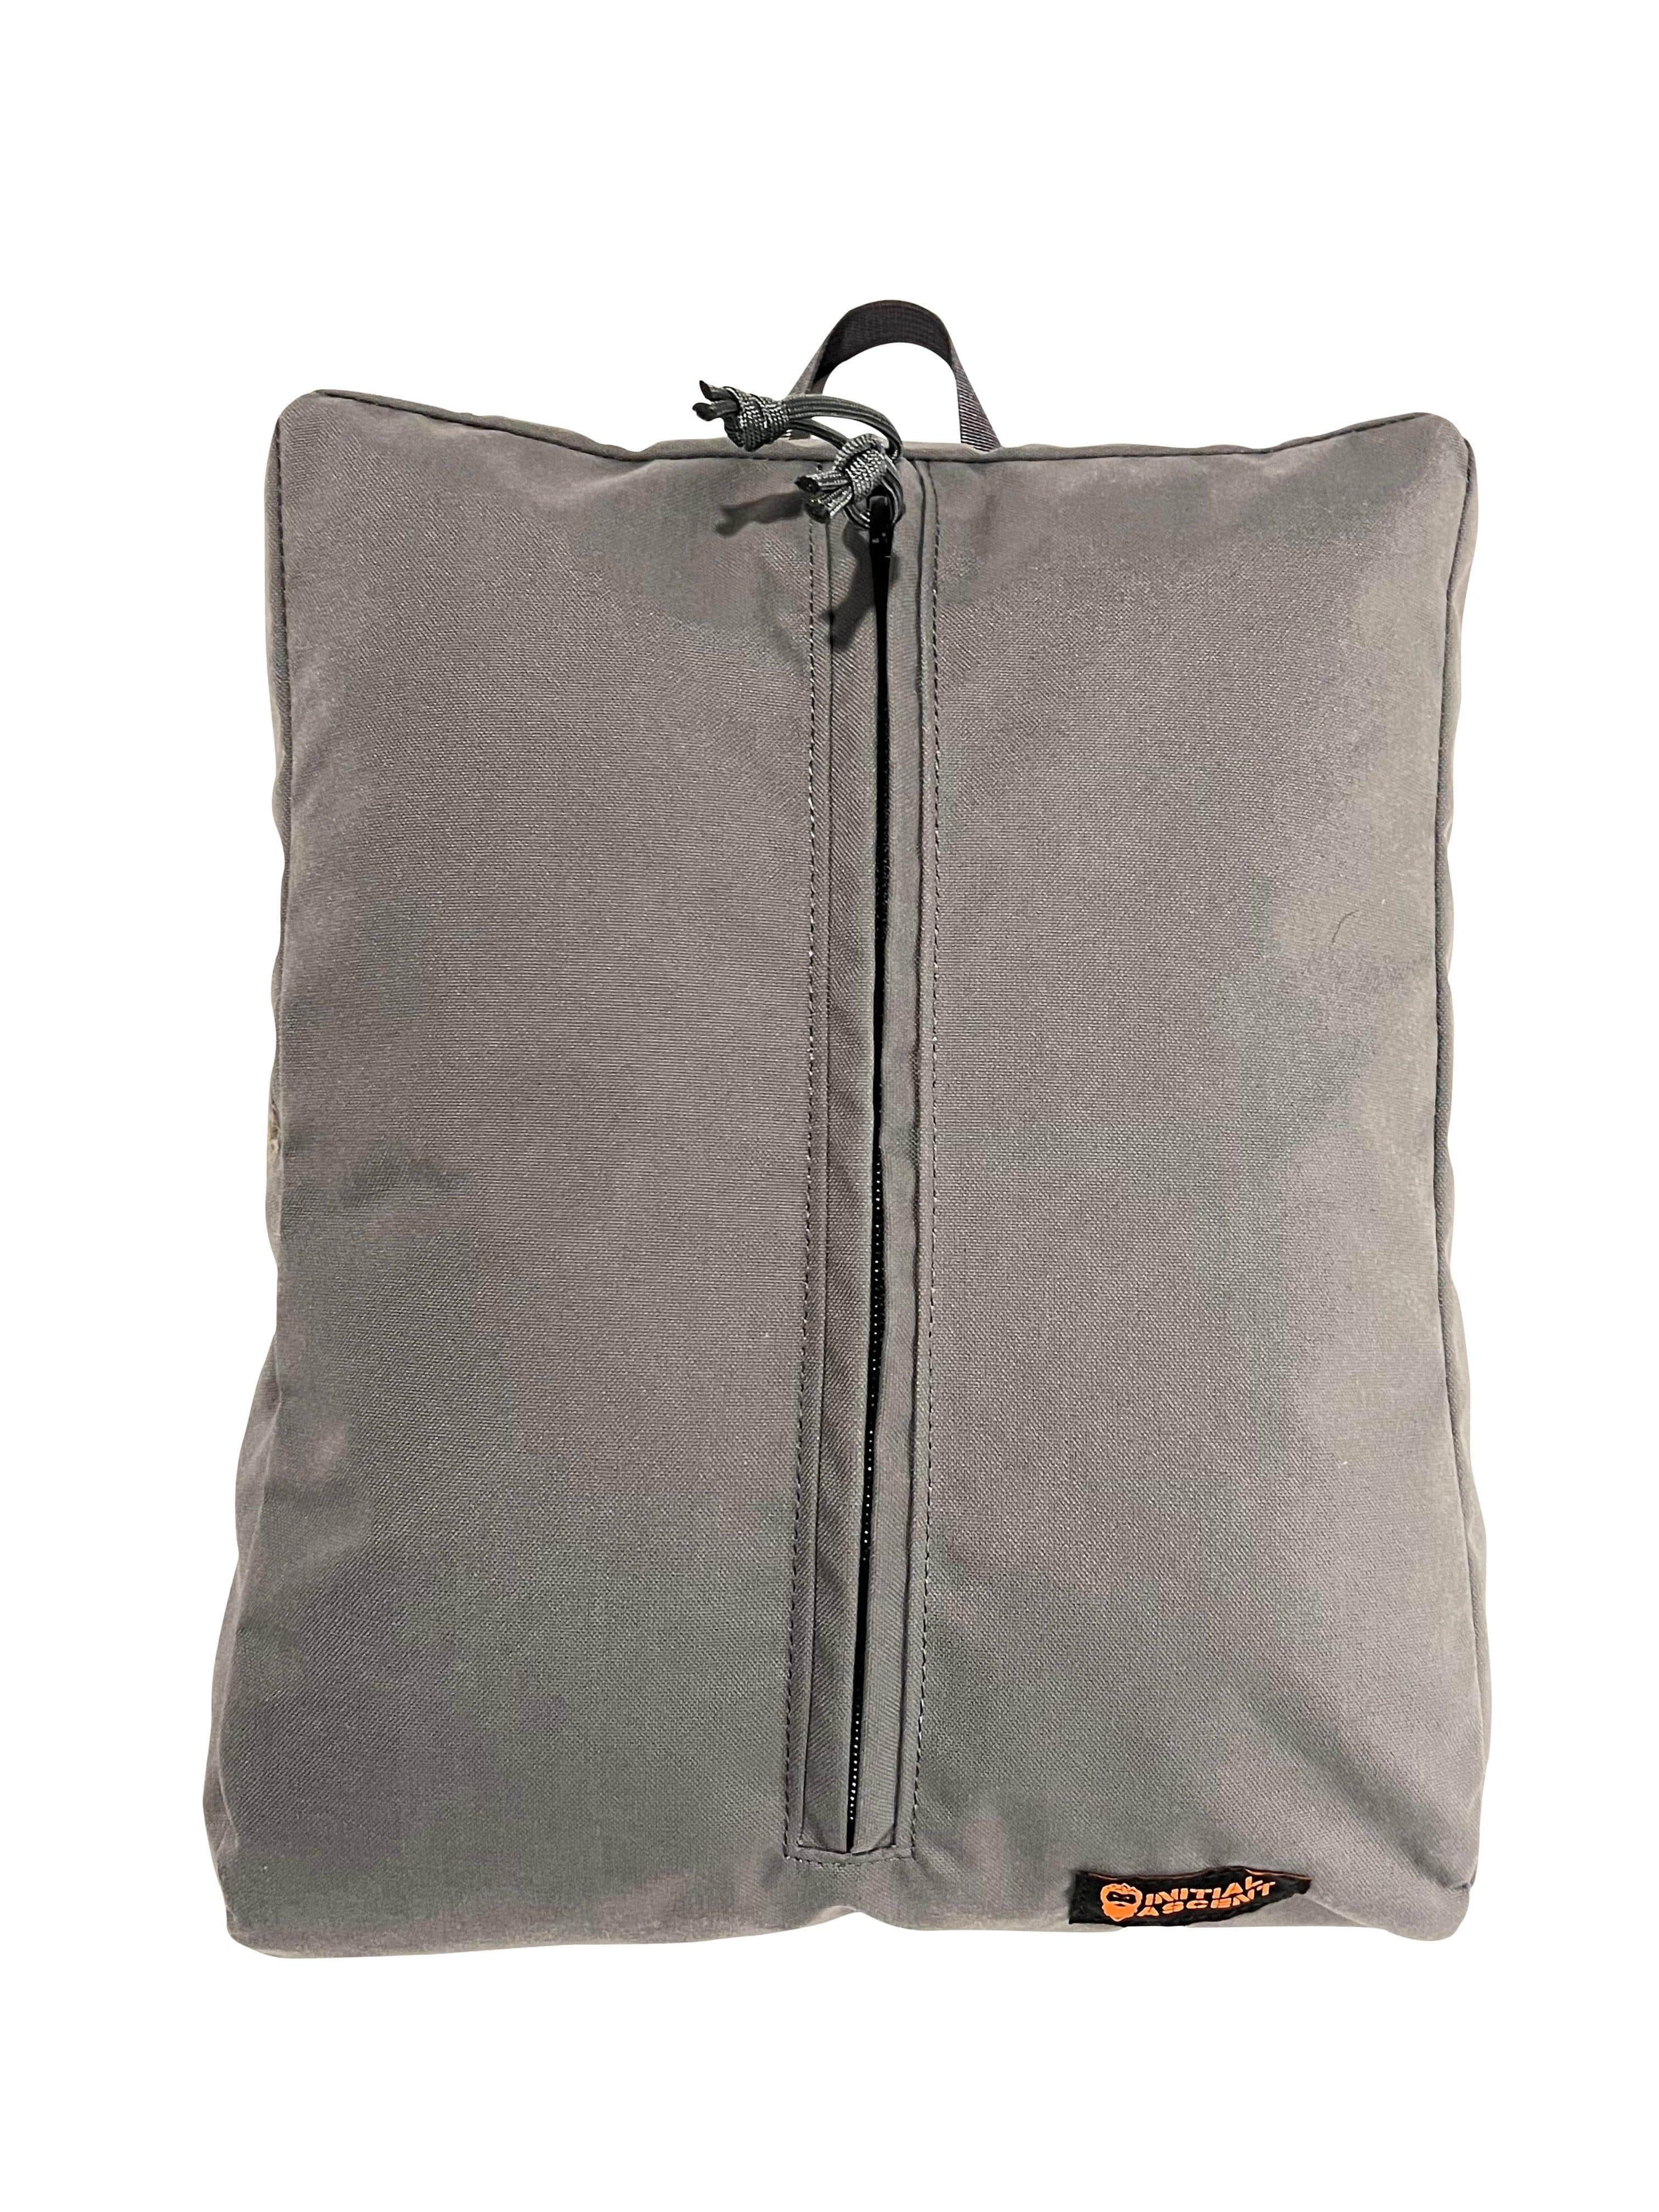 IA Cub Accessory Bag